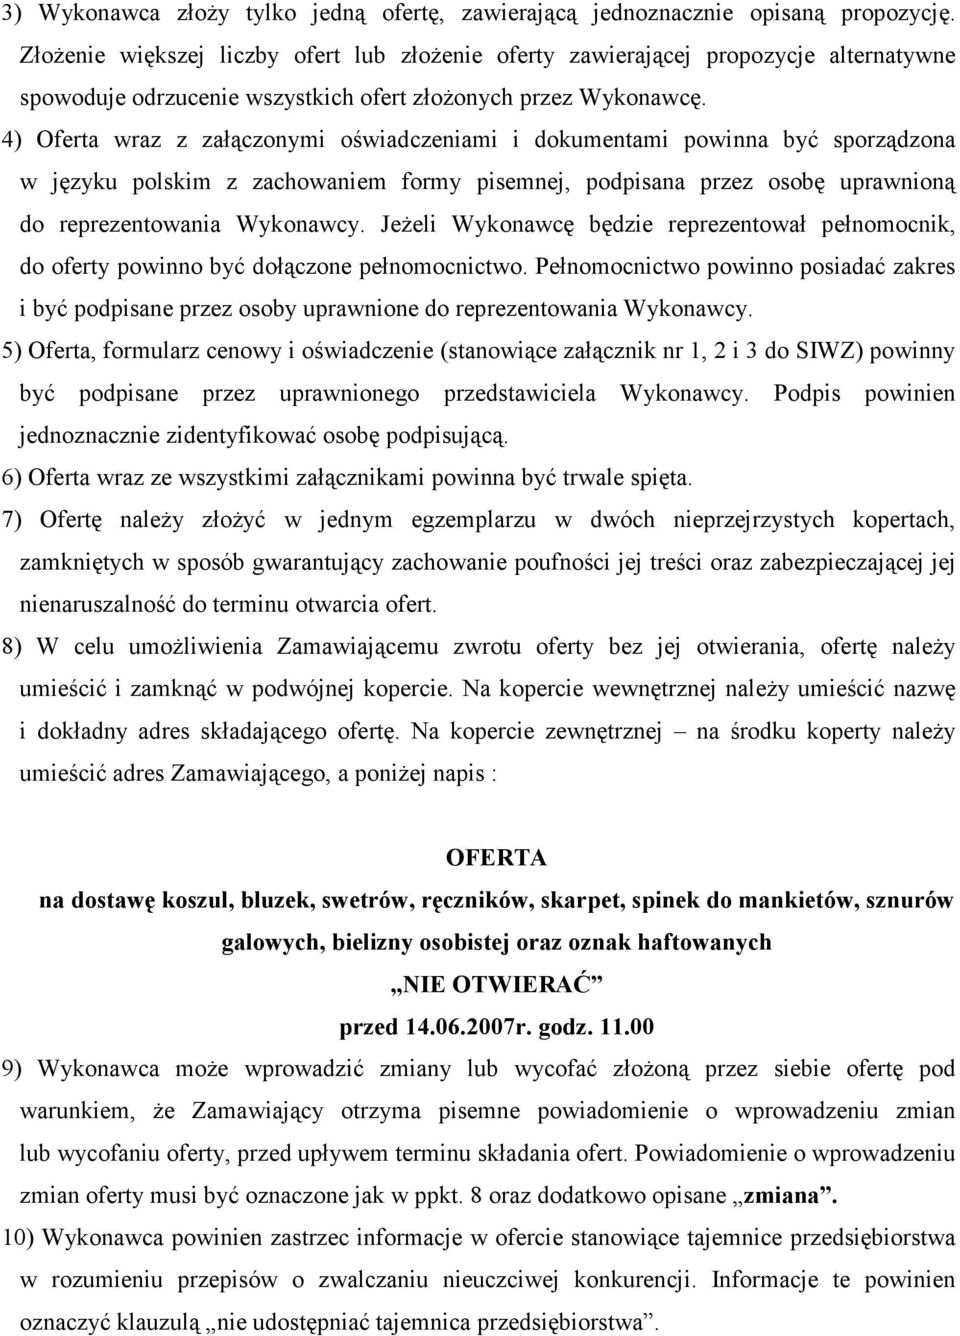 4) Oferta wraz z załączonymi oświadczeniami i dokumentami powinna być sporządzona w języku polskim z zachowaniem formy pisemnej, podpisana przez osobę uprawnioną do reprezentowania Wykonawcy.